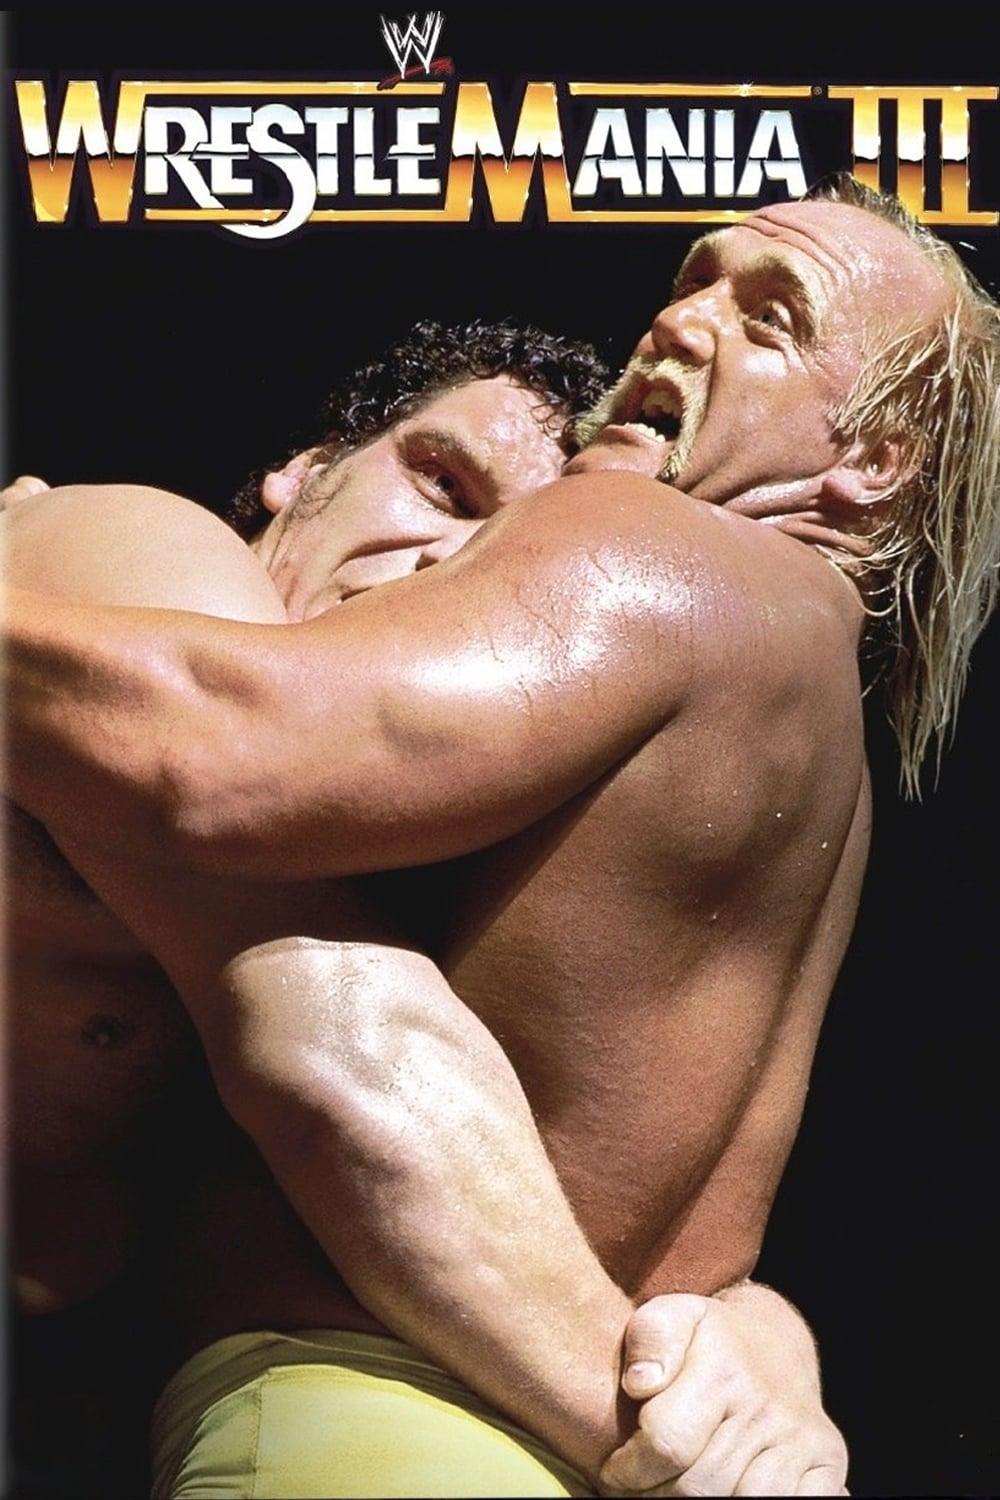 WWE WrestleMania III poster